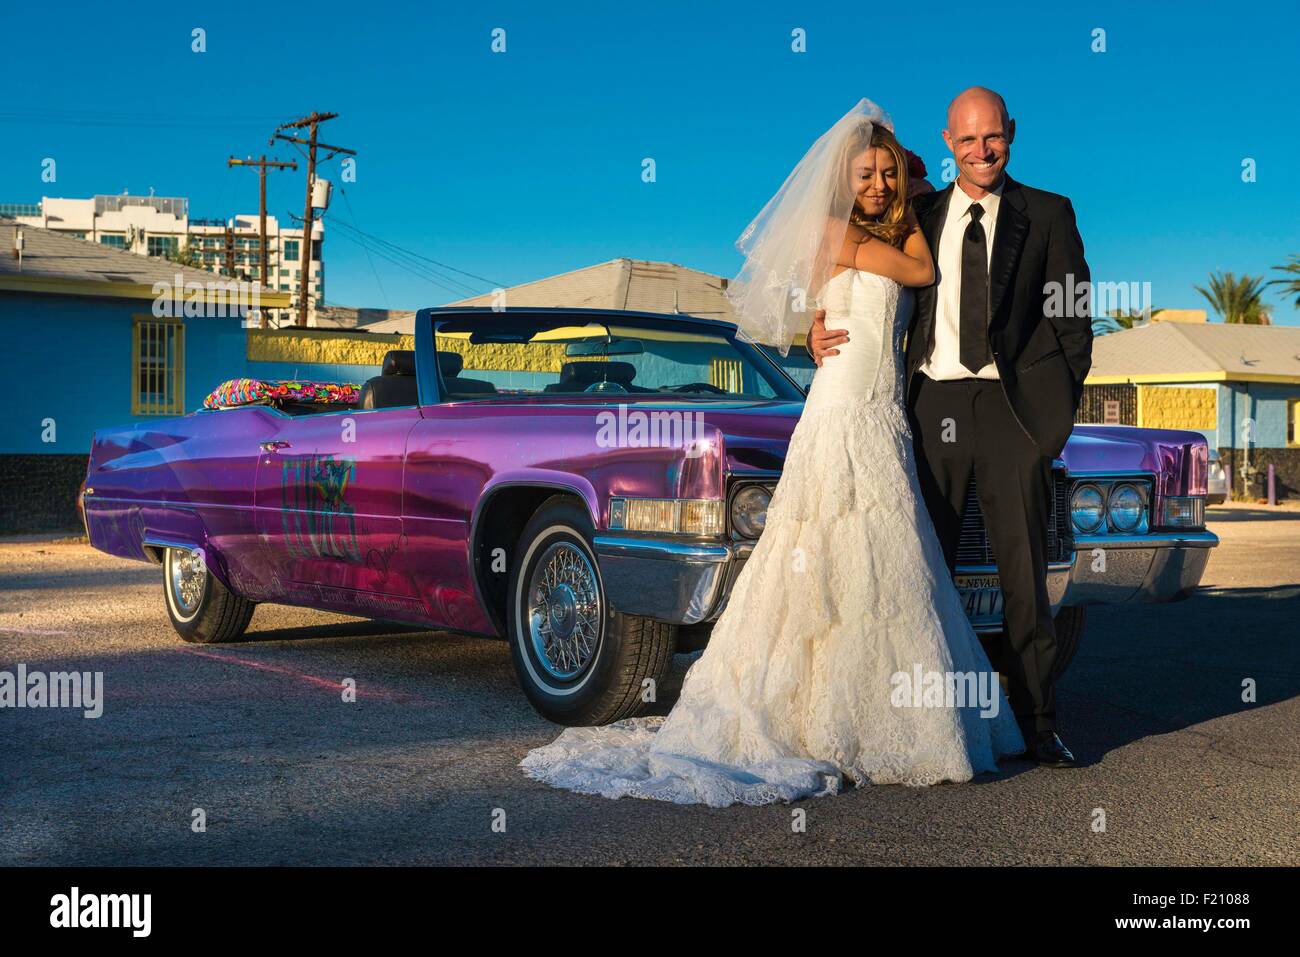 Stati Uniti, Nevada, la striscia, sposi in una Limousine Foto Stock